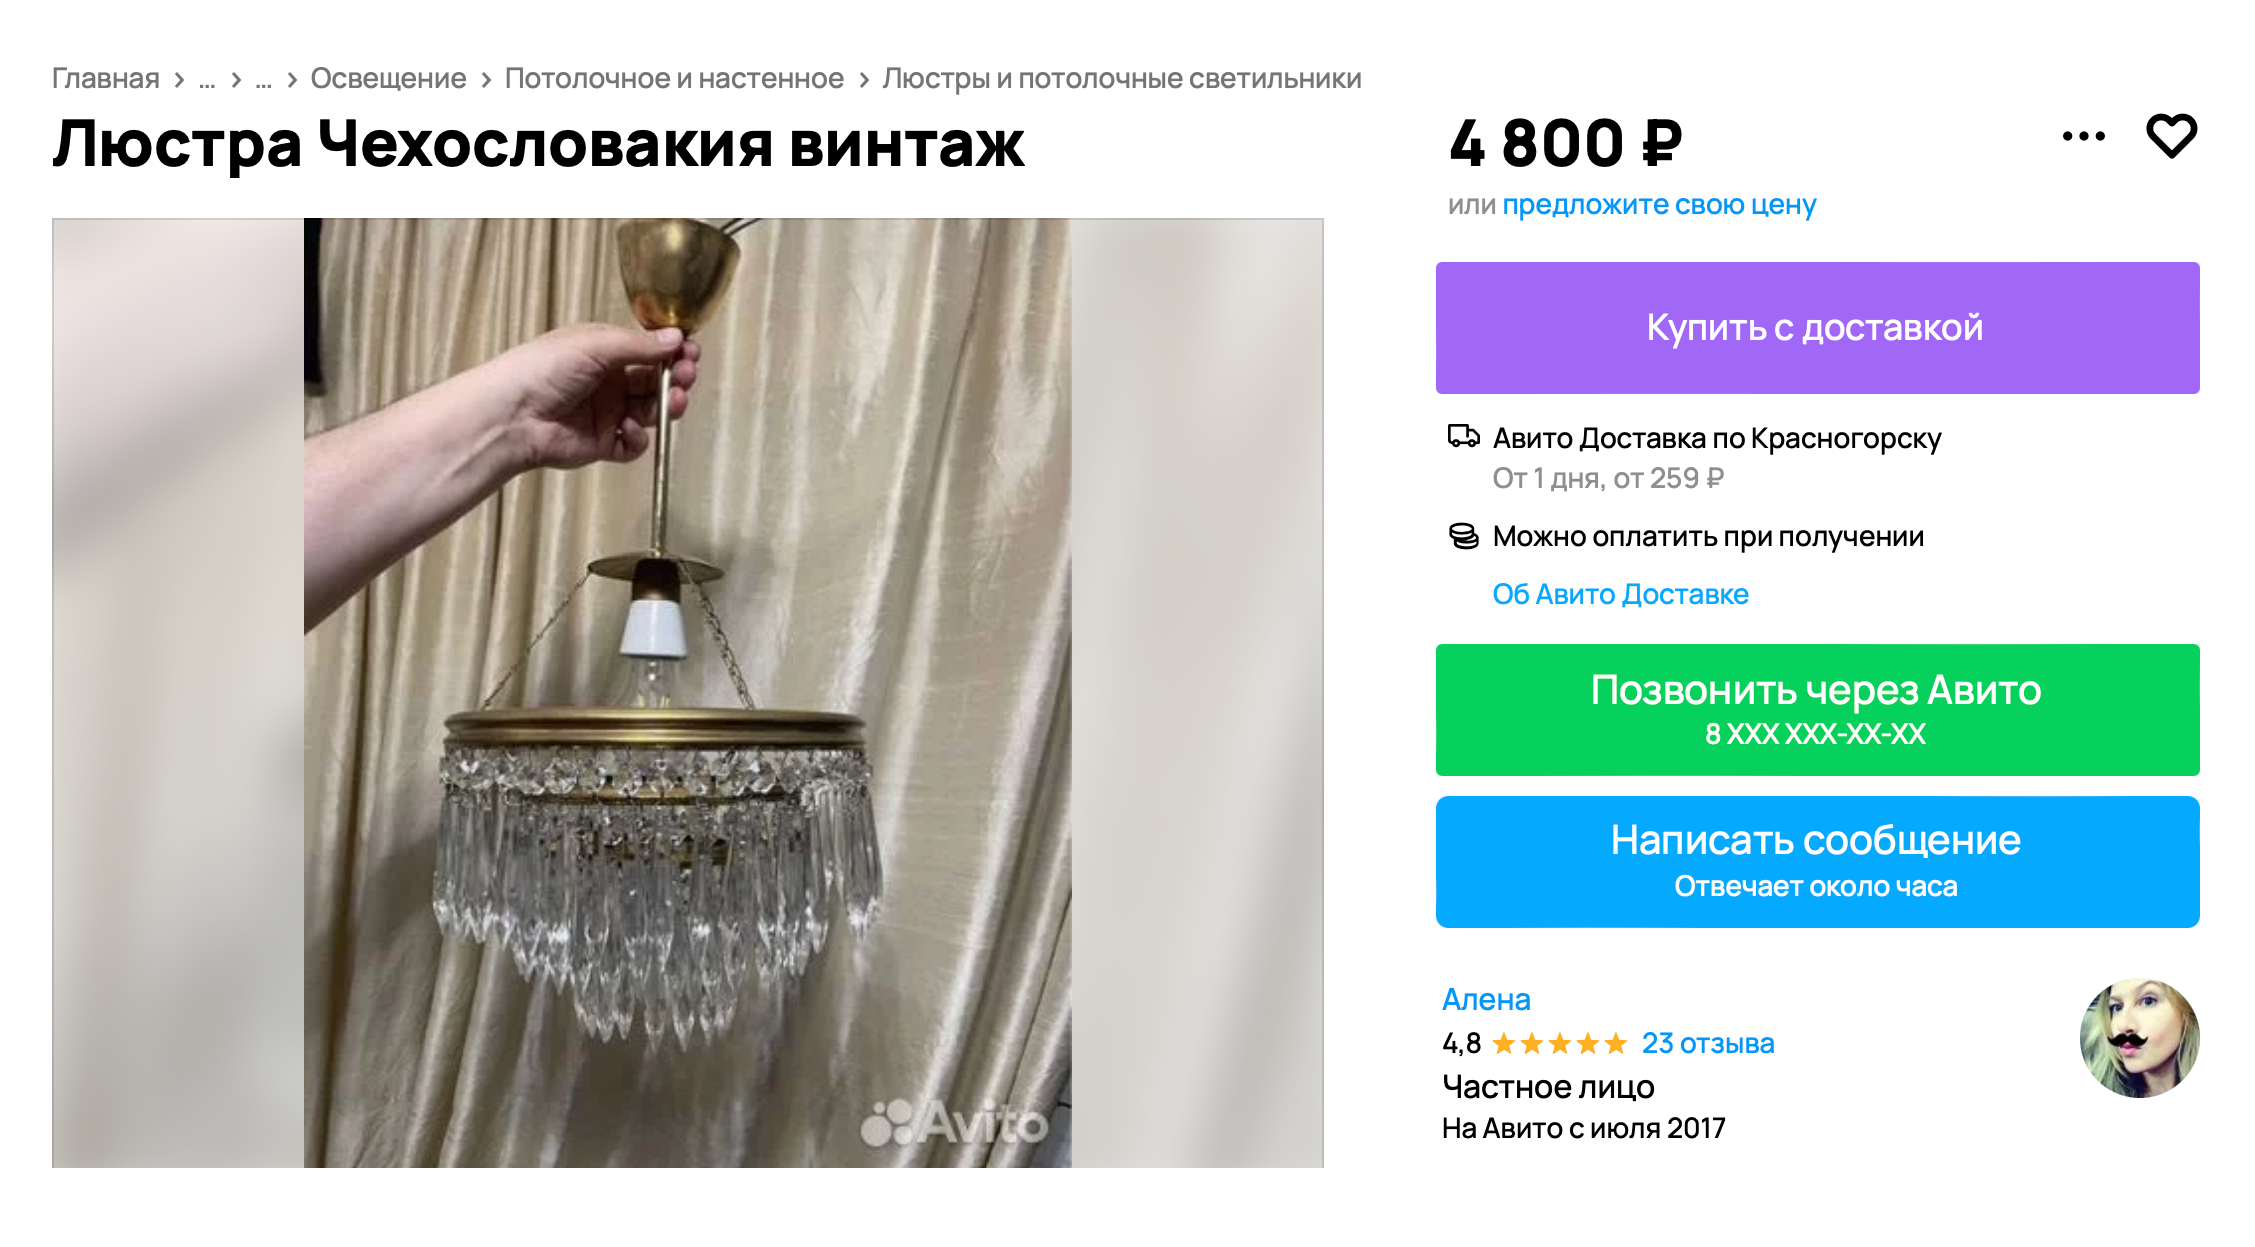 Винтажная хрустальная люстра за 4800 ₽ — настоящая находка, ведь современные аналоги стоят от 30 000 ₽. Источник: avito.ru